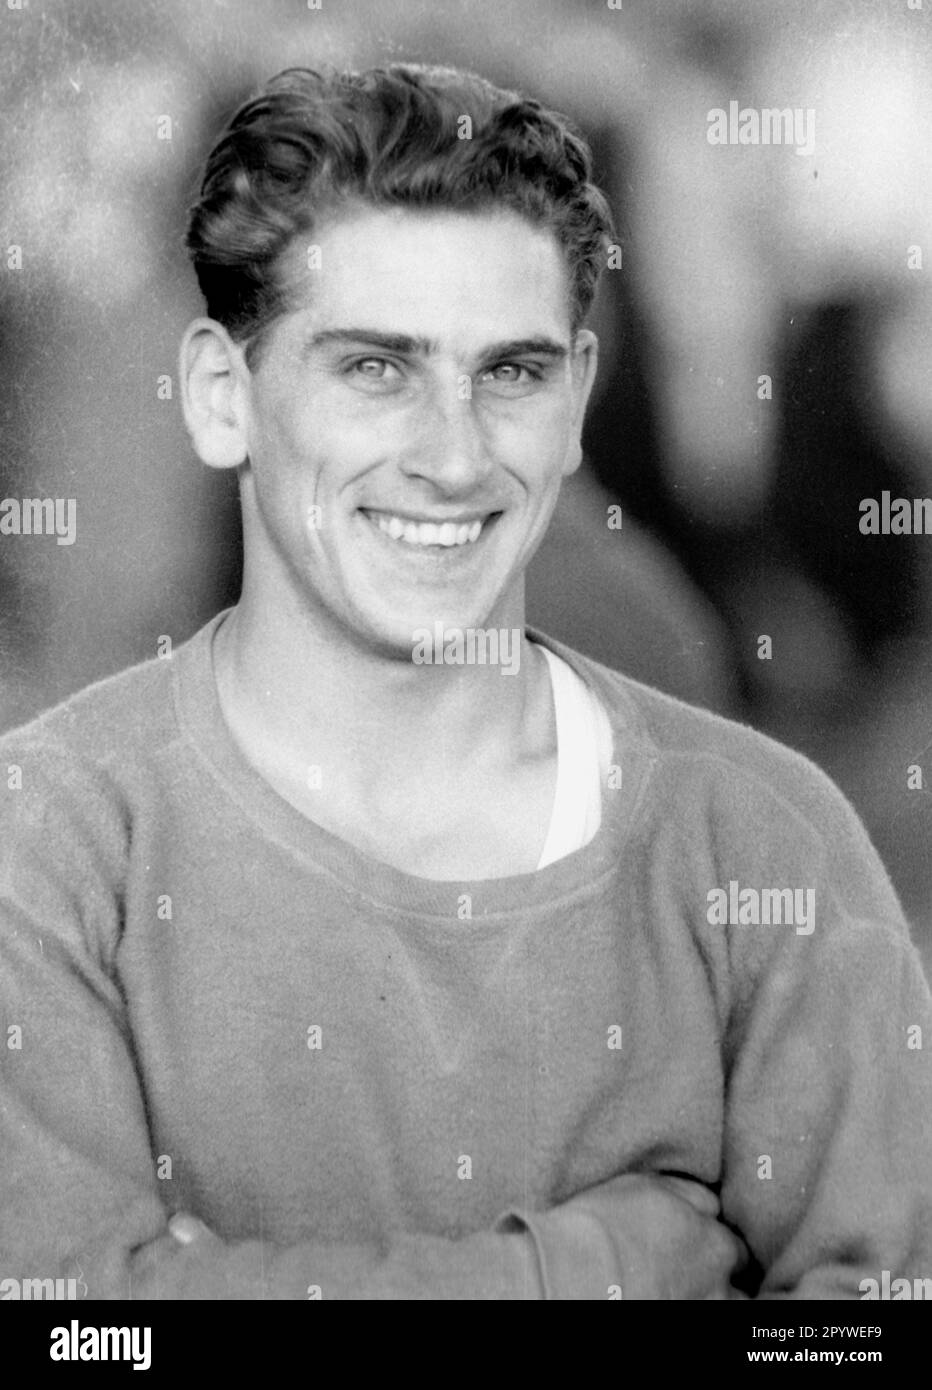 Gymnastics: German Championships in Essen 10.05.1959. Philipp Fürst portrait. [automated translation] Stock Photo